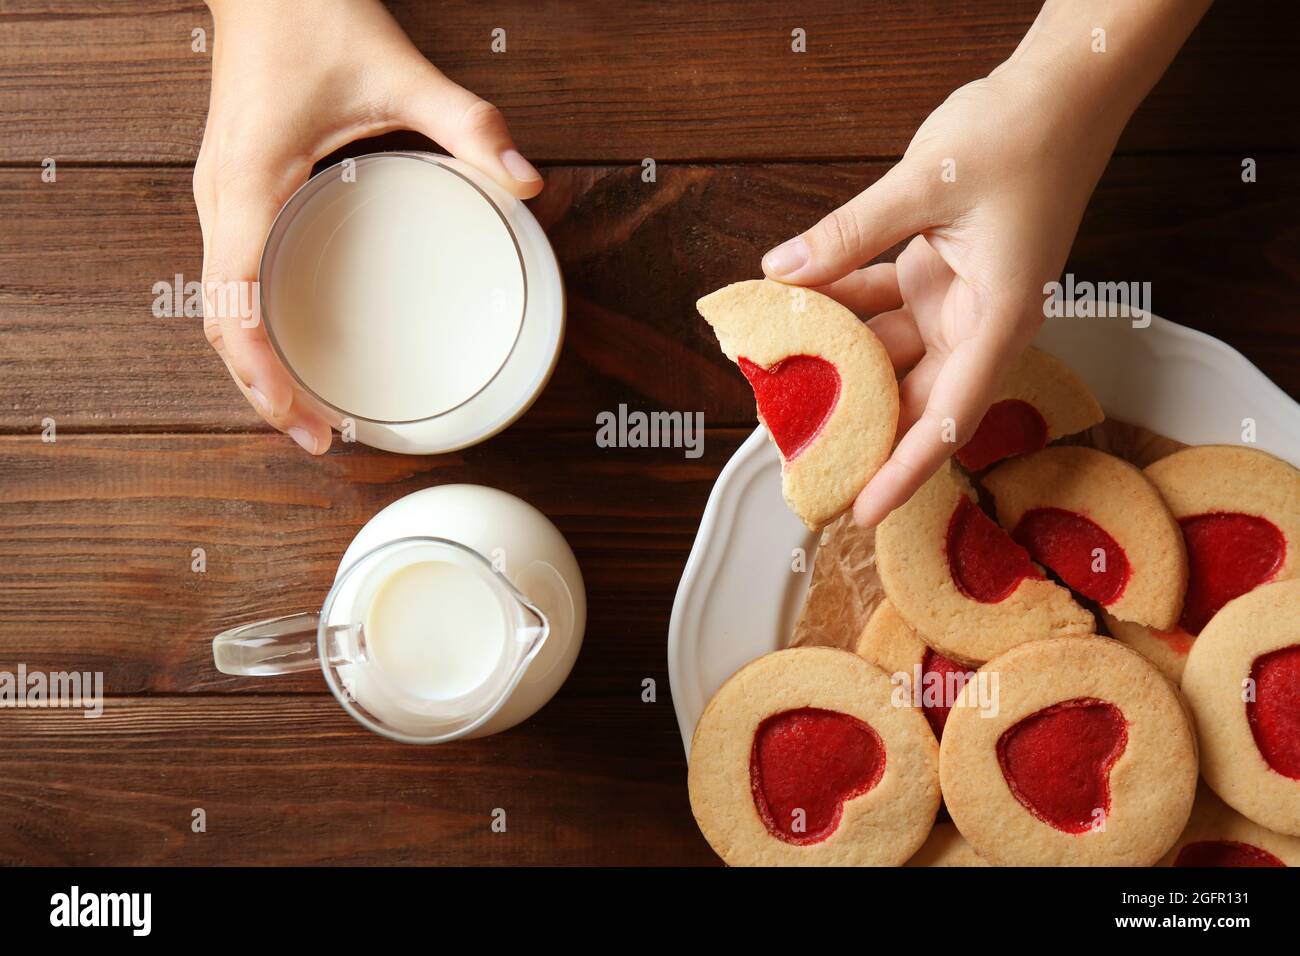 Mains féminines avec lait et biscuits sur table en bois, vue de dessus Banque D'Images